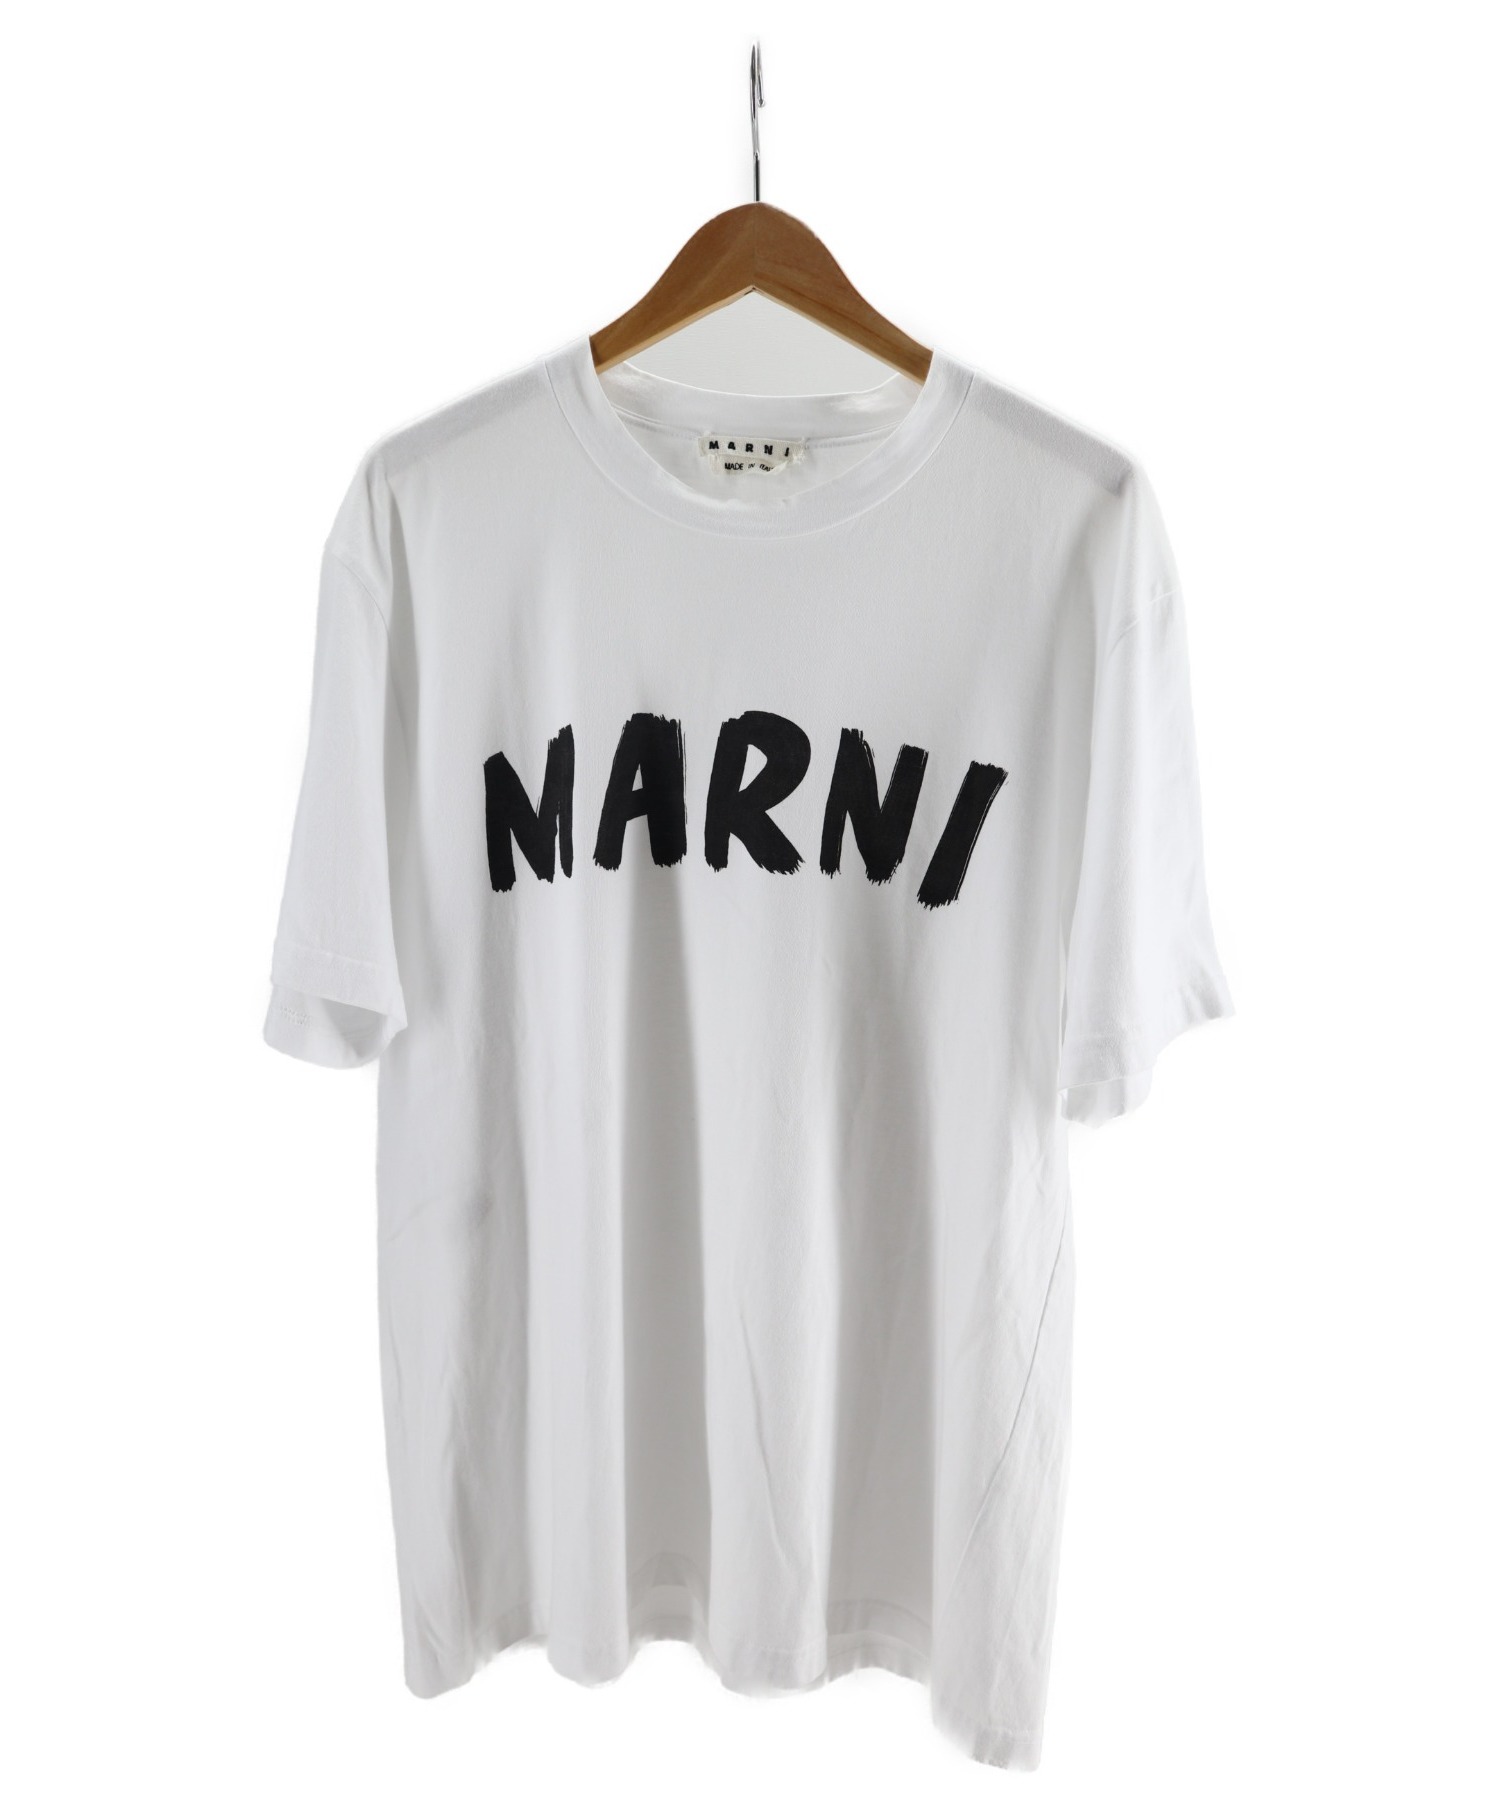 19760円新座販売 売り出し卸値 marni マルニ ペイントシャツ トップス